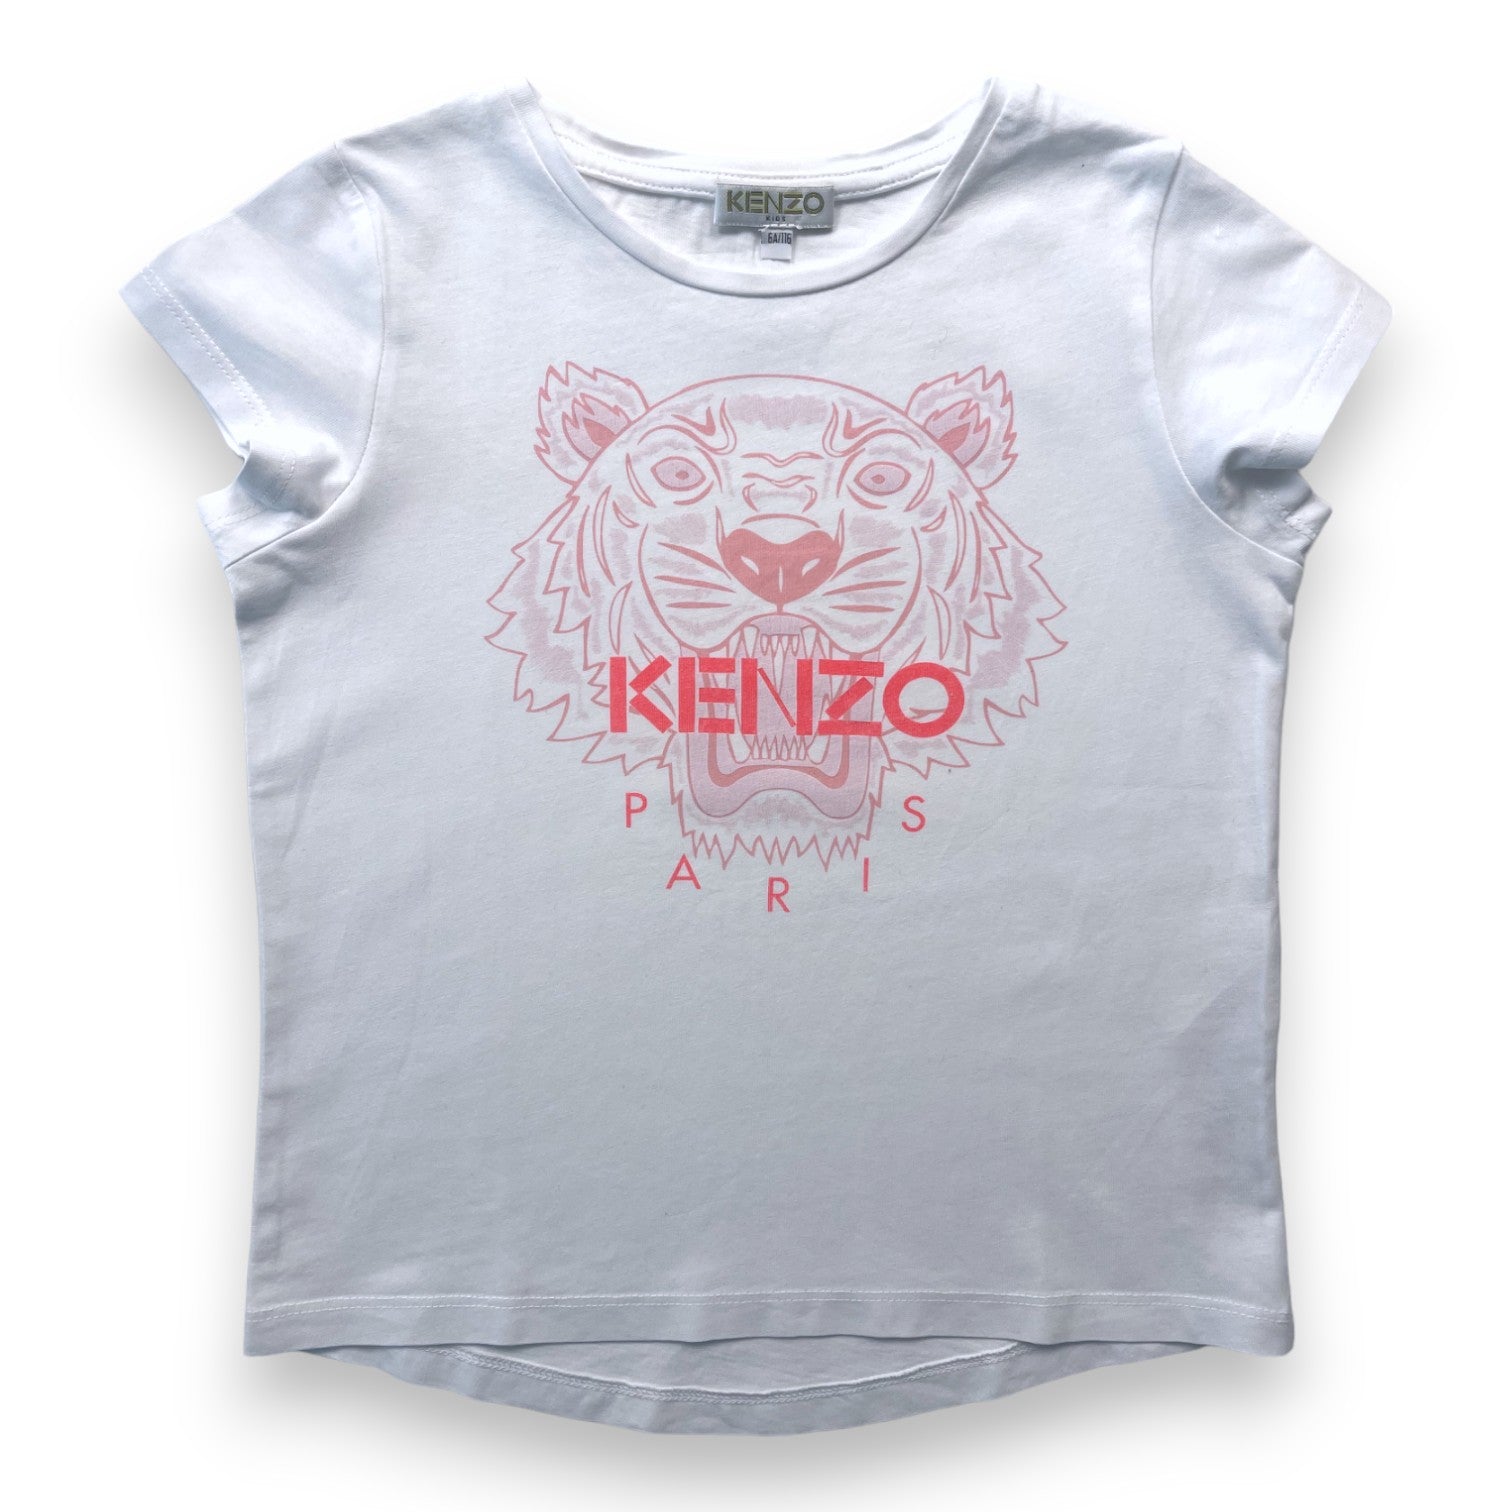 KENZO - T shirt blanc tête de lion rose - 6 ans